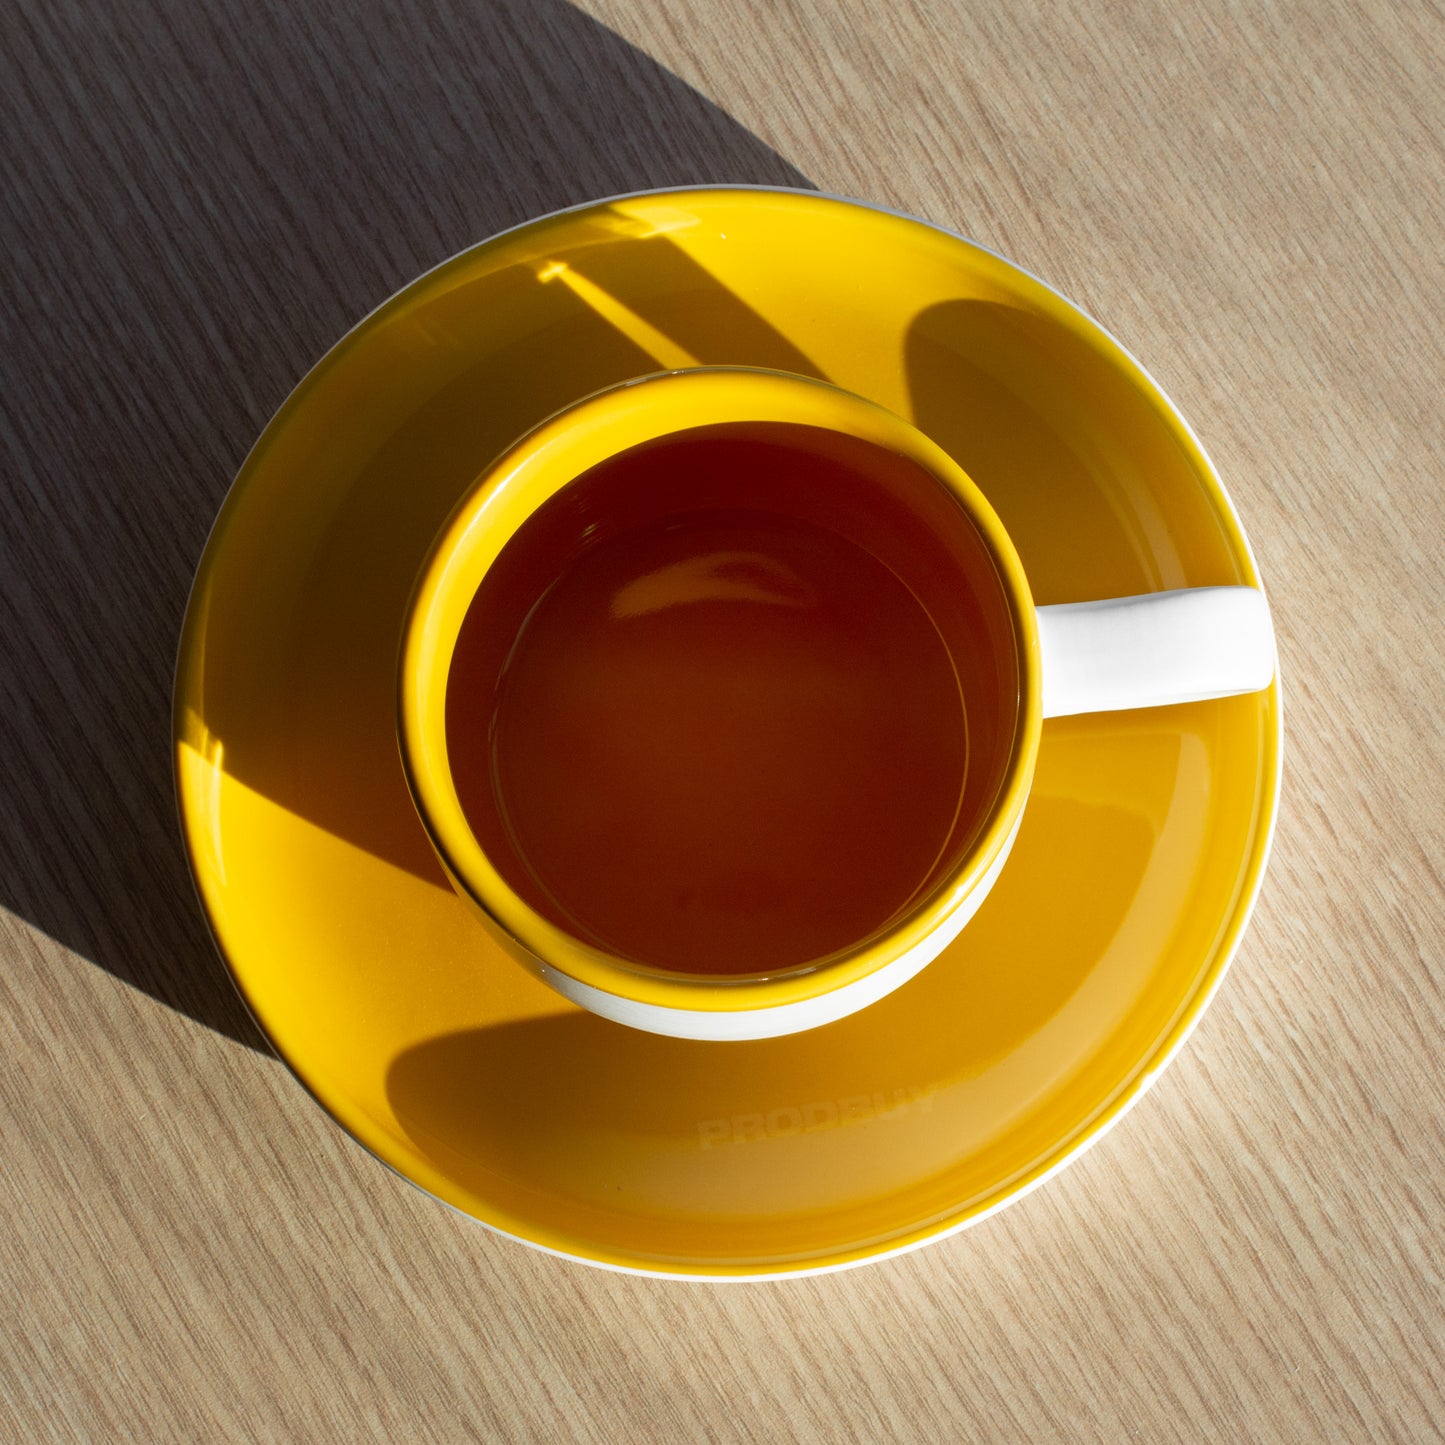 Yellow & White La Cafetière Tea Cup & Saucer Set